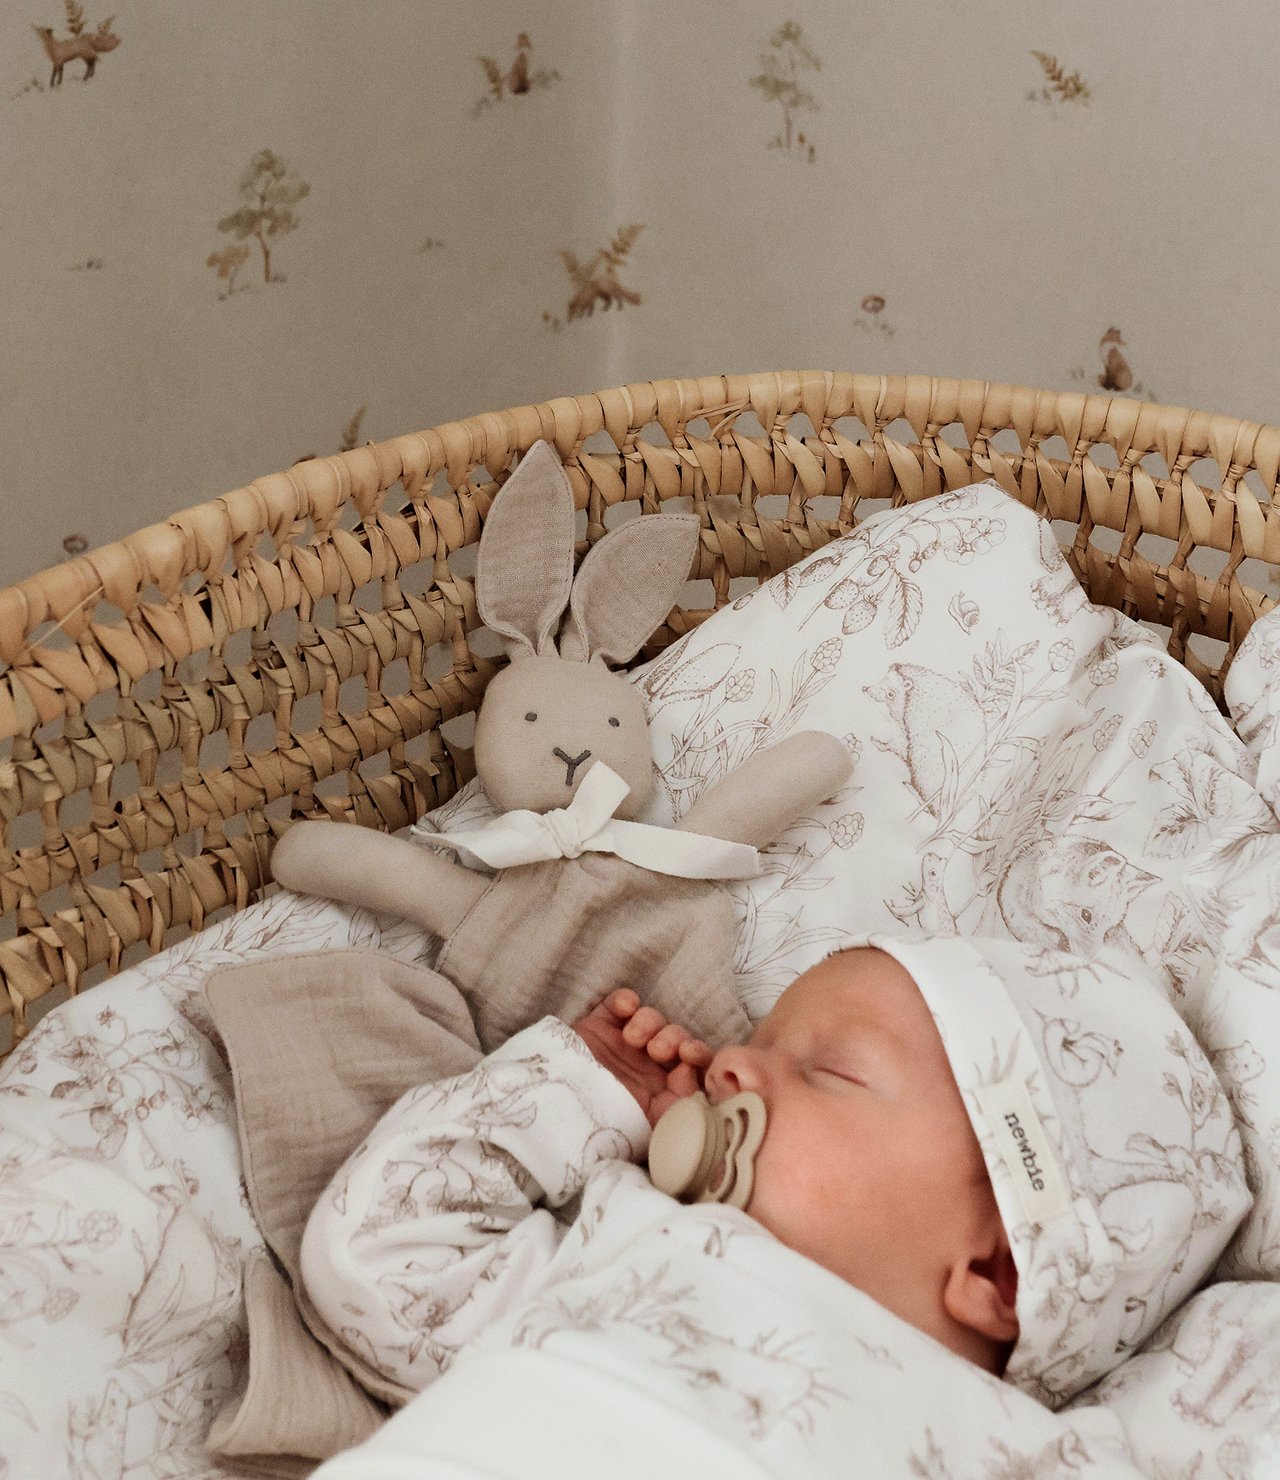 bebis sover i spjälsäng